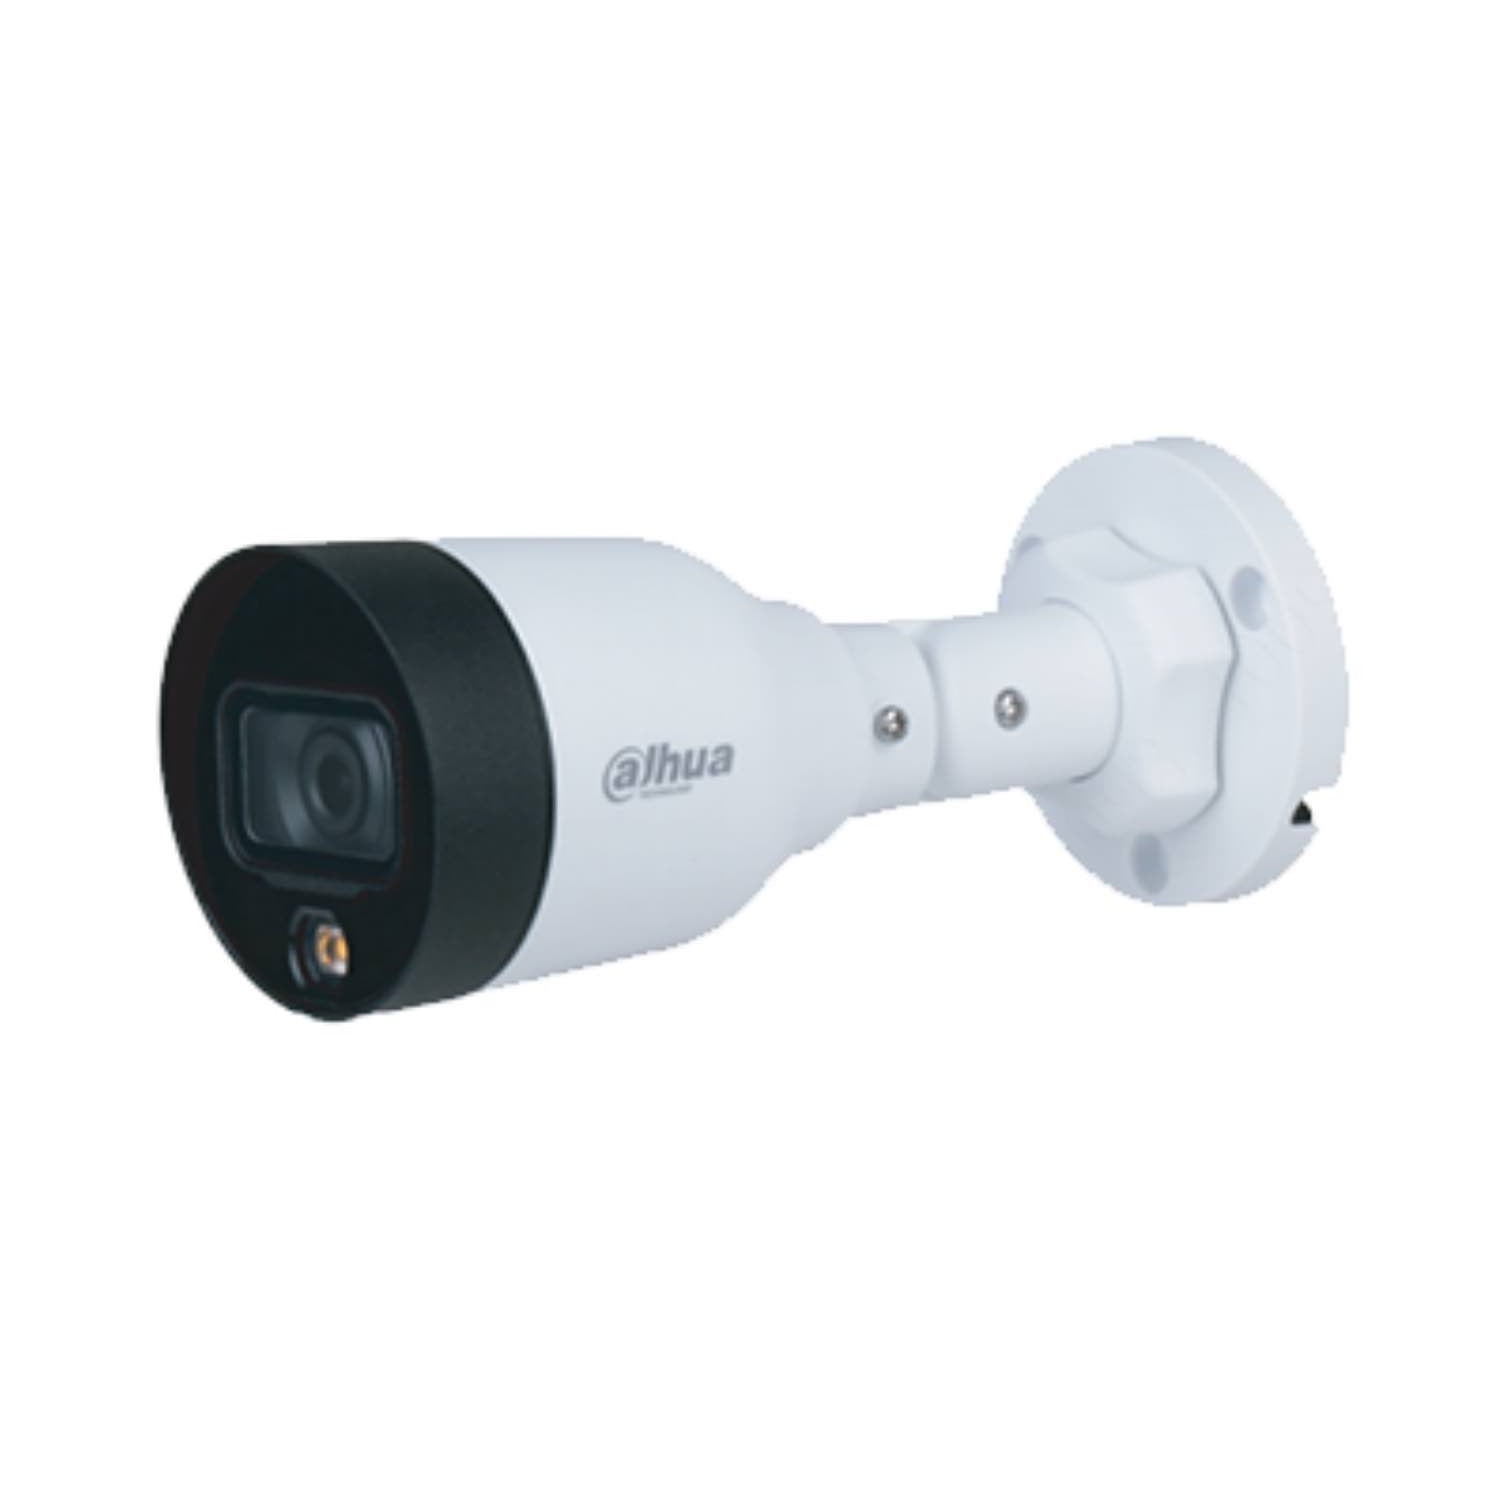 Dahua 2MP IP Network Bullet Camera DH-IPC-HFW1239S1P-LED-S4